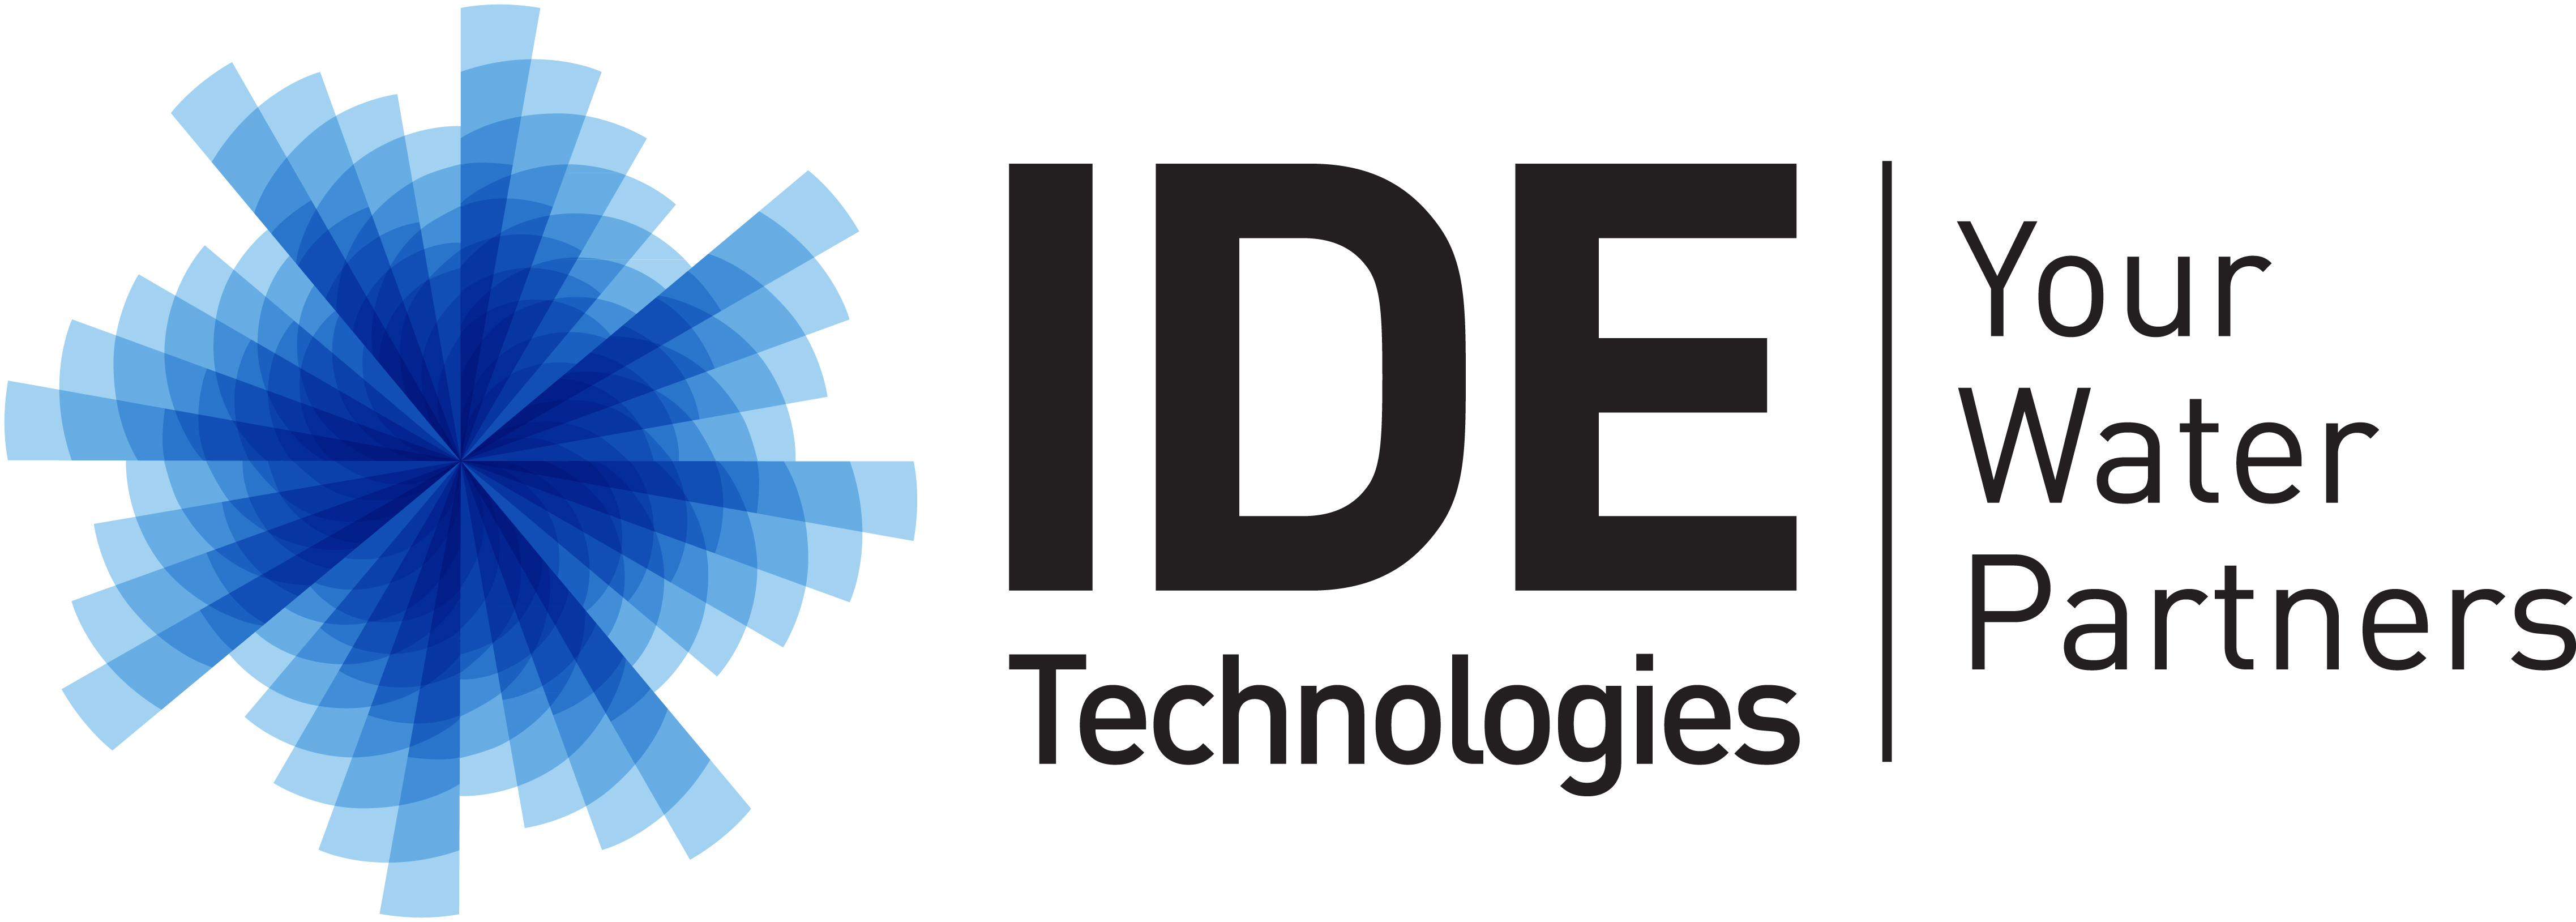 IDE remporte un appel d'offres international pour financer, concevoir, construire et exploiter l'usine de dessalement de Galilée occidentale en Israël